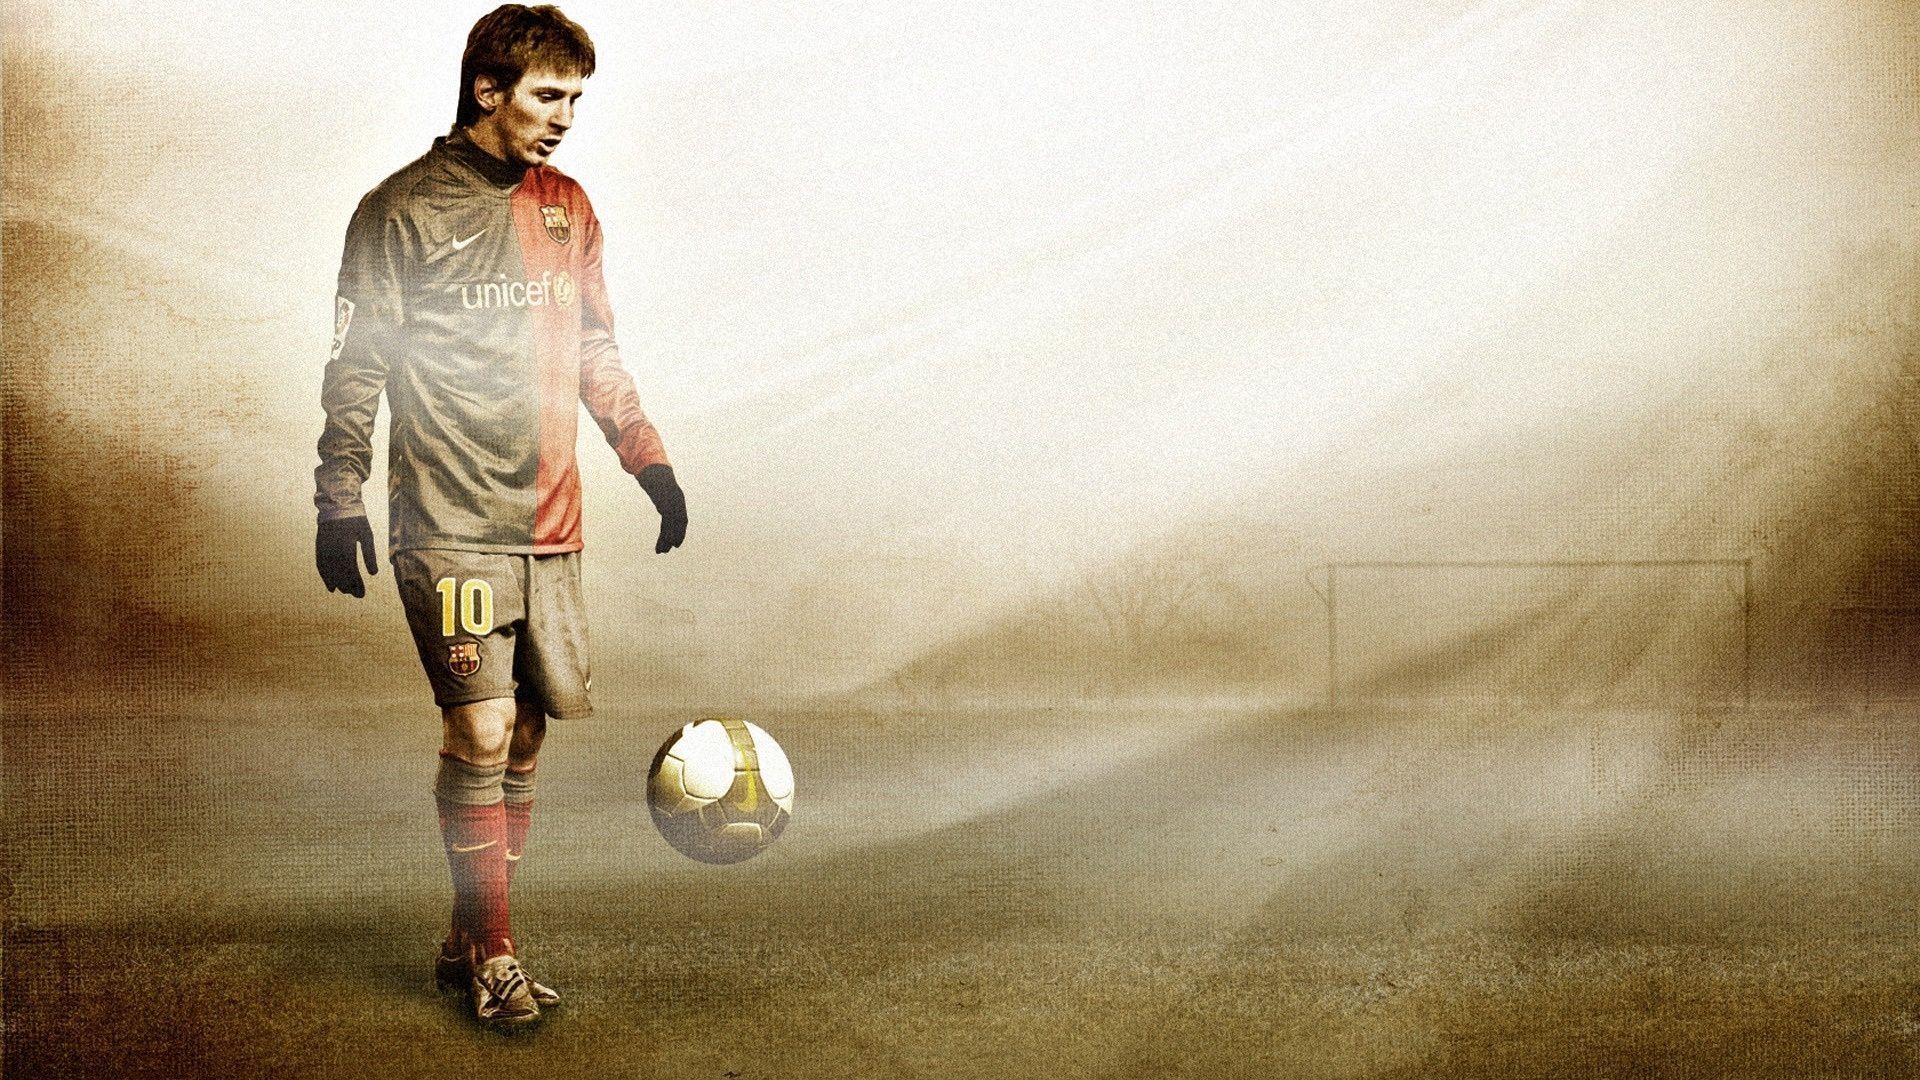 Fonds d'écran Lionel Messi : tous les wallpapers Lionel Messi